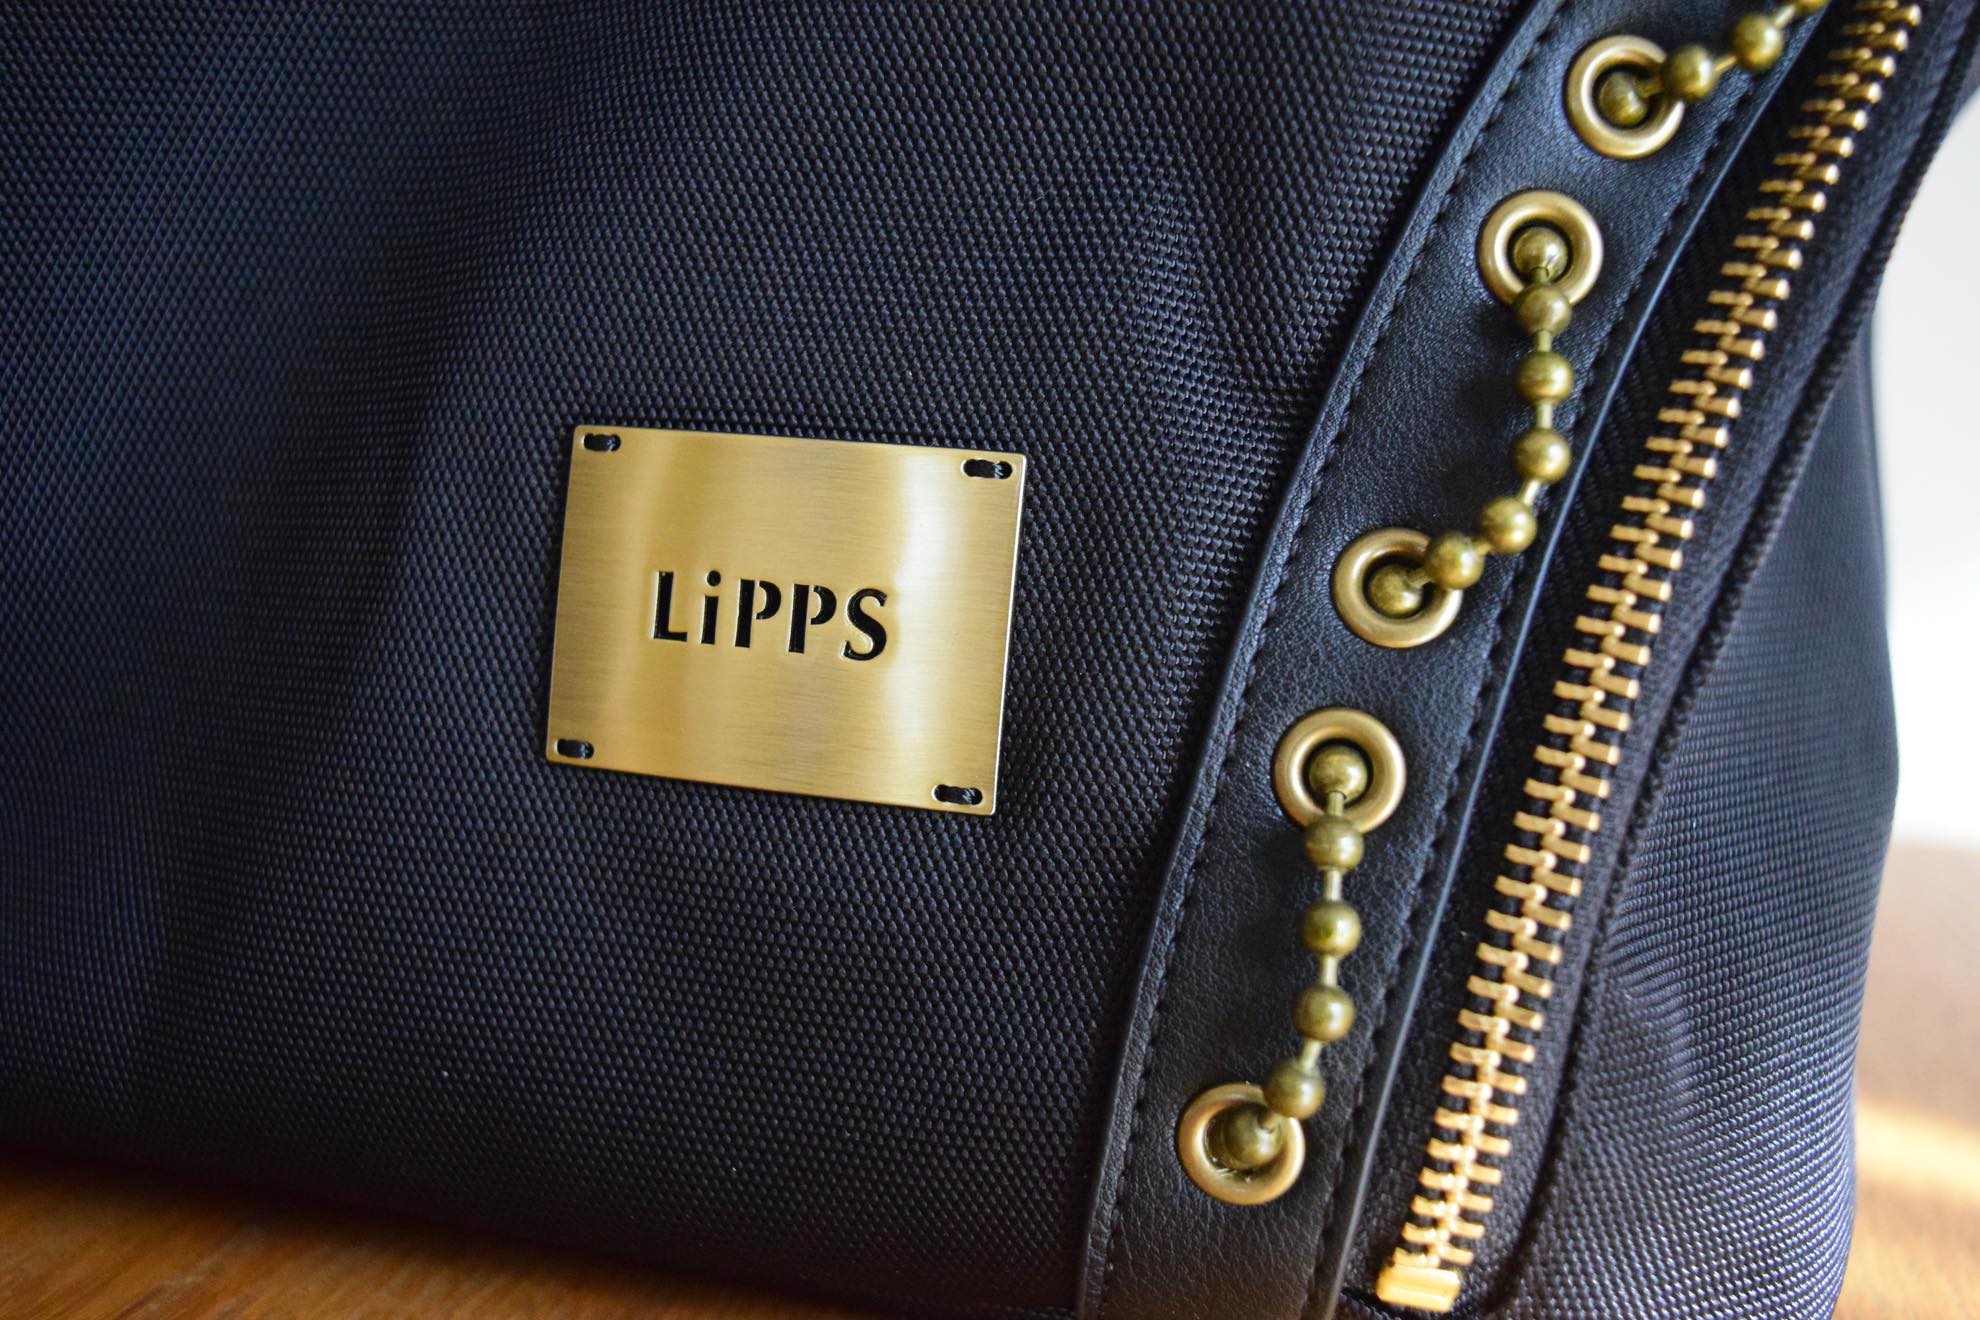 LiPPS『Tulip』の舞台がバッグの中に!? 上品でクールな「フレグランスオブナイト」なデザインのバックパック。『アイドルマスター シンデレラガールズ』の世界を持ち歩こう_004